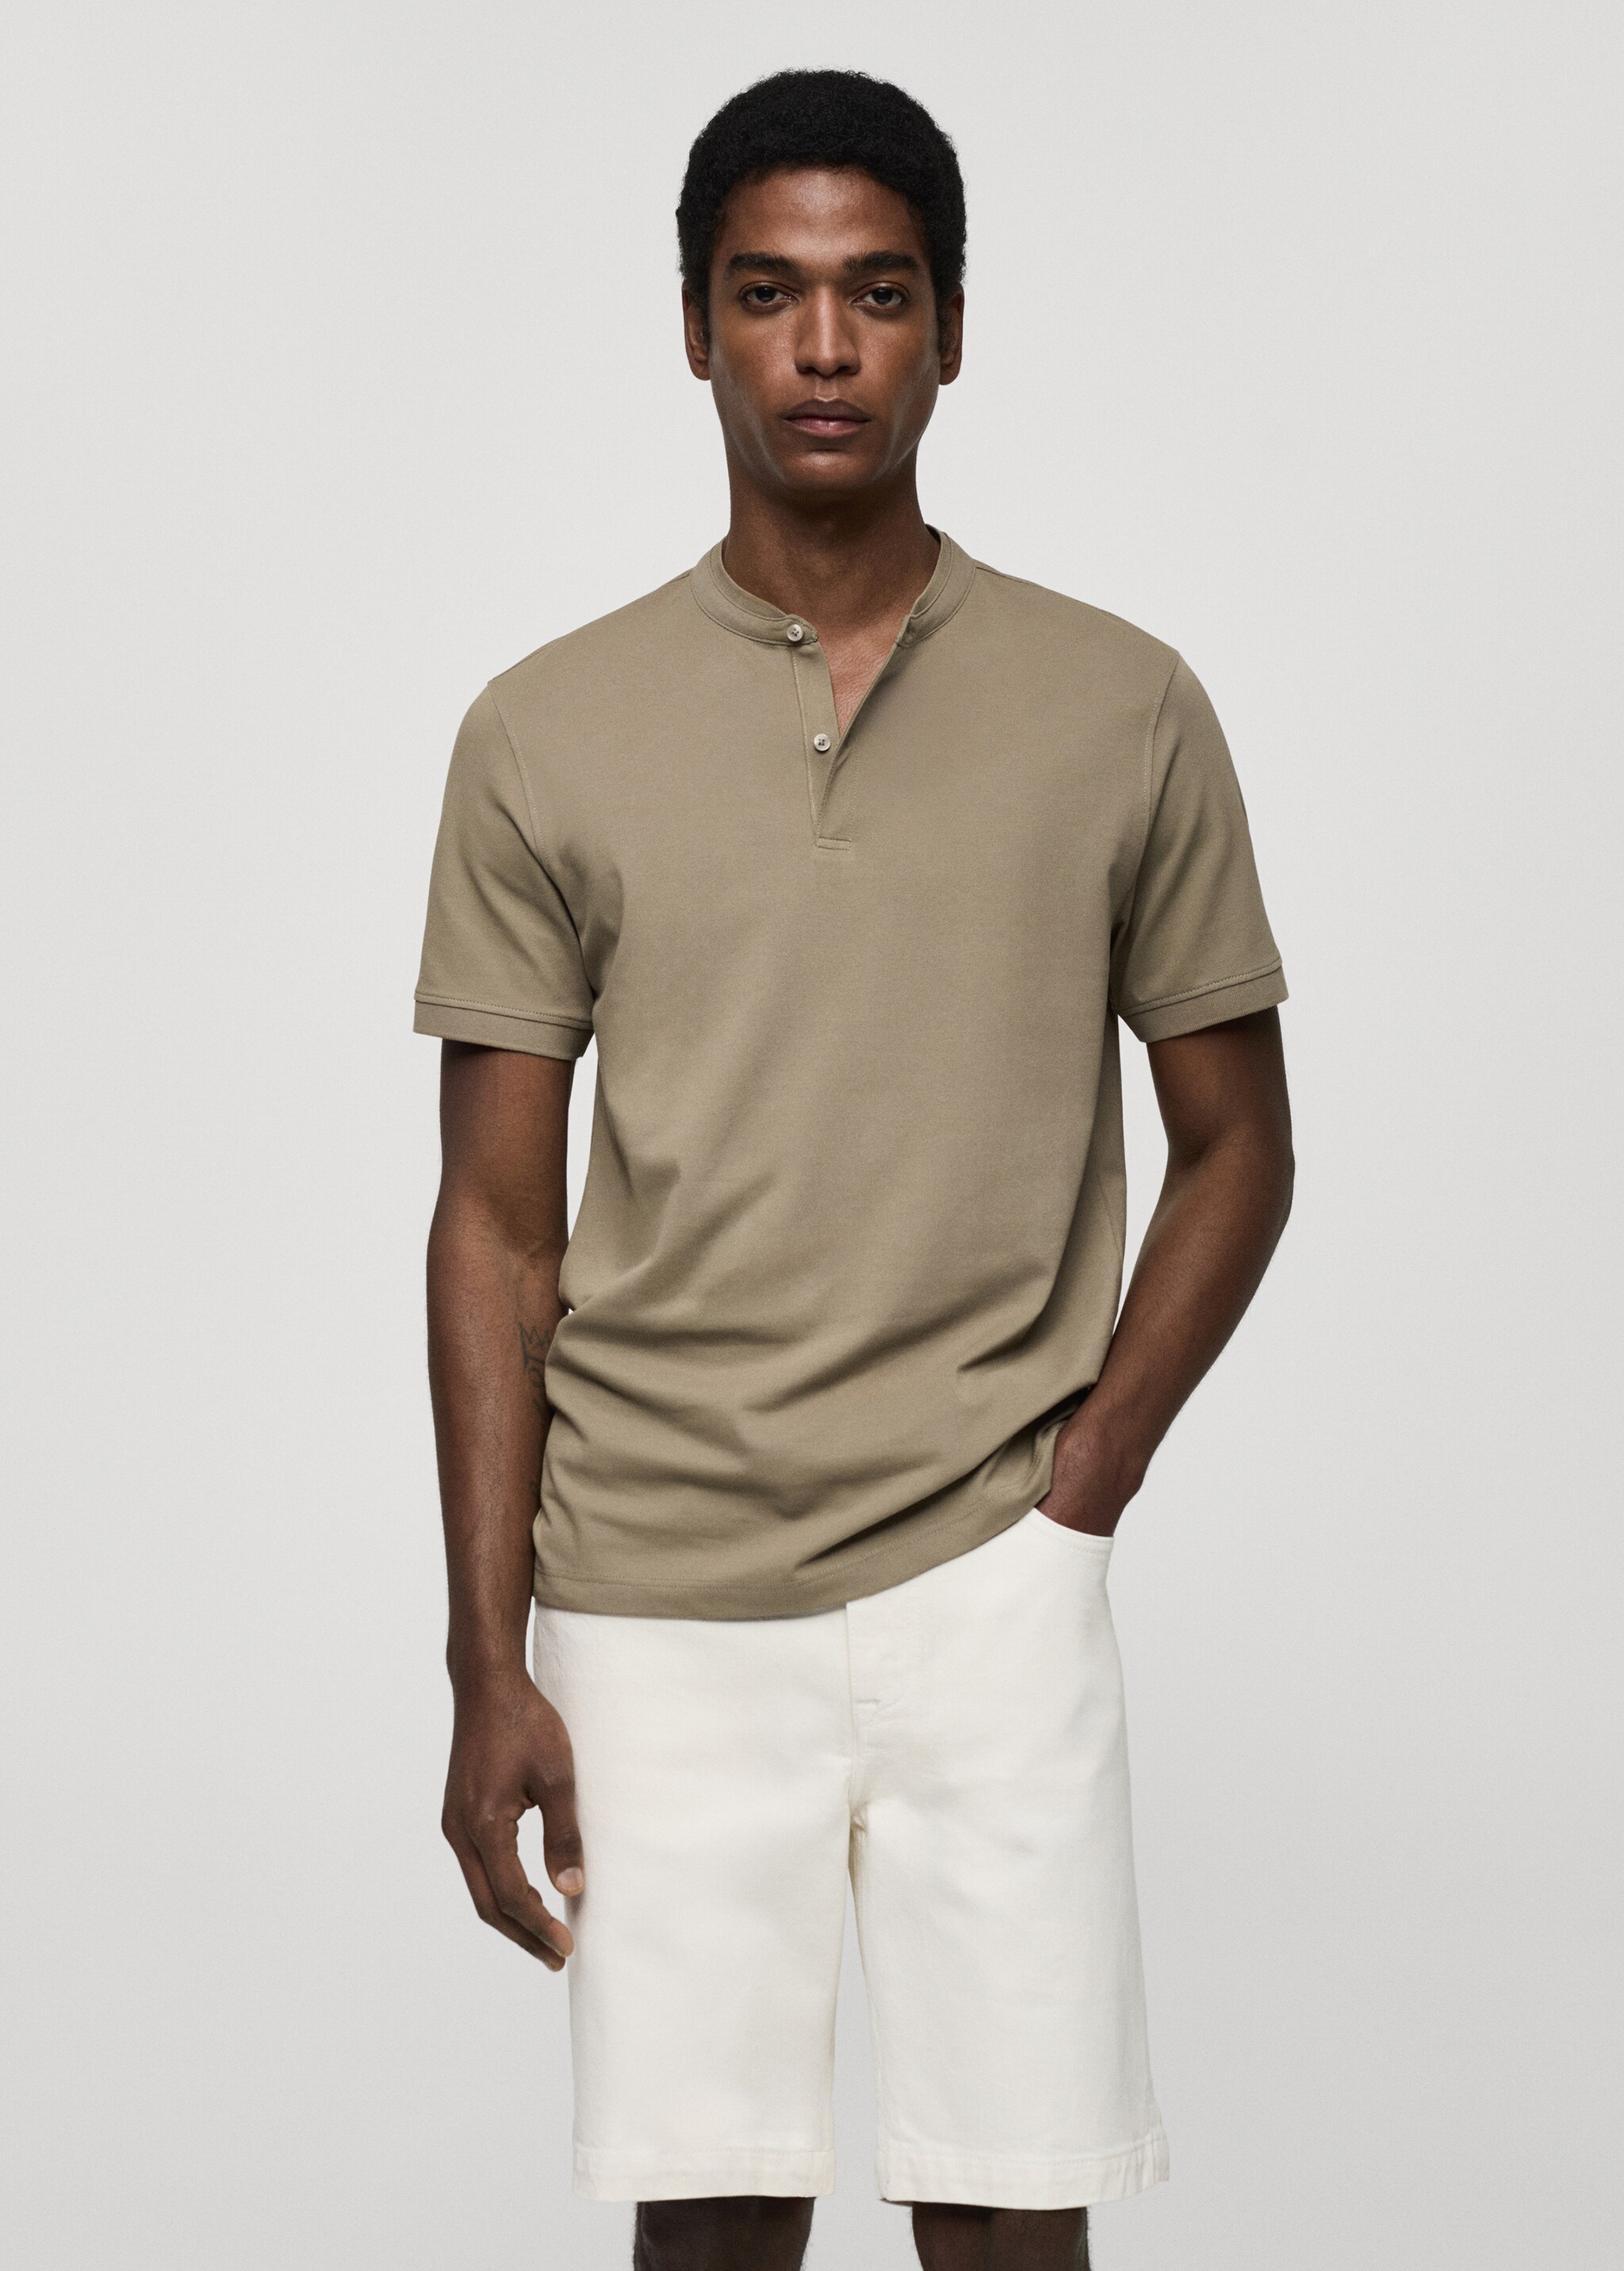 Cotton pique polo shirt with mao collar - Medium plane